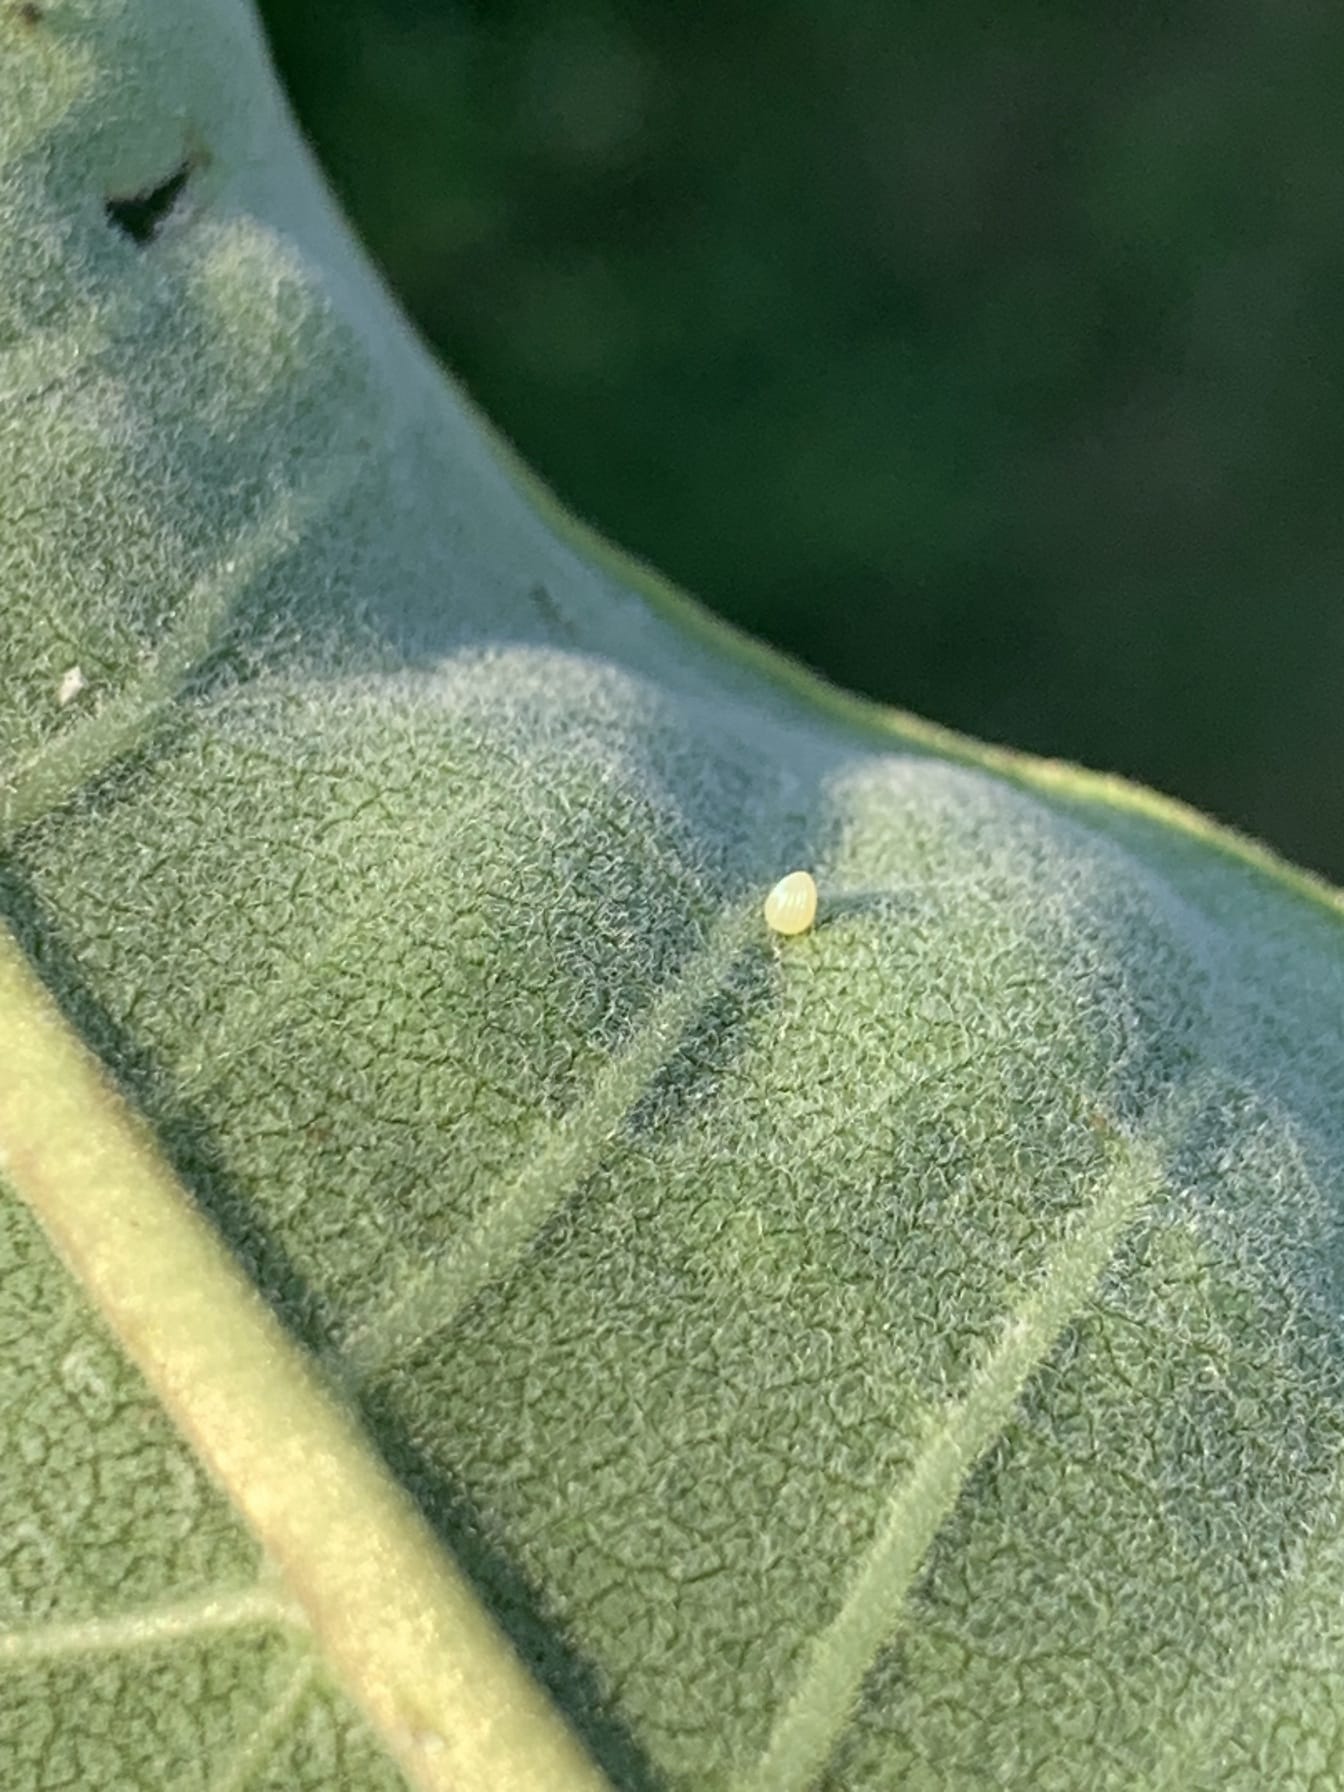 Ovo da borboleta monarca na parte de trás da folha de milkweed forma de cone amarelo muito pequeno